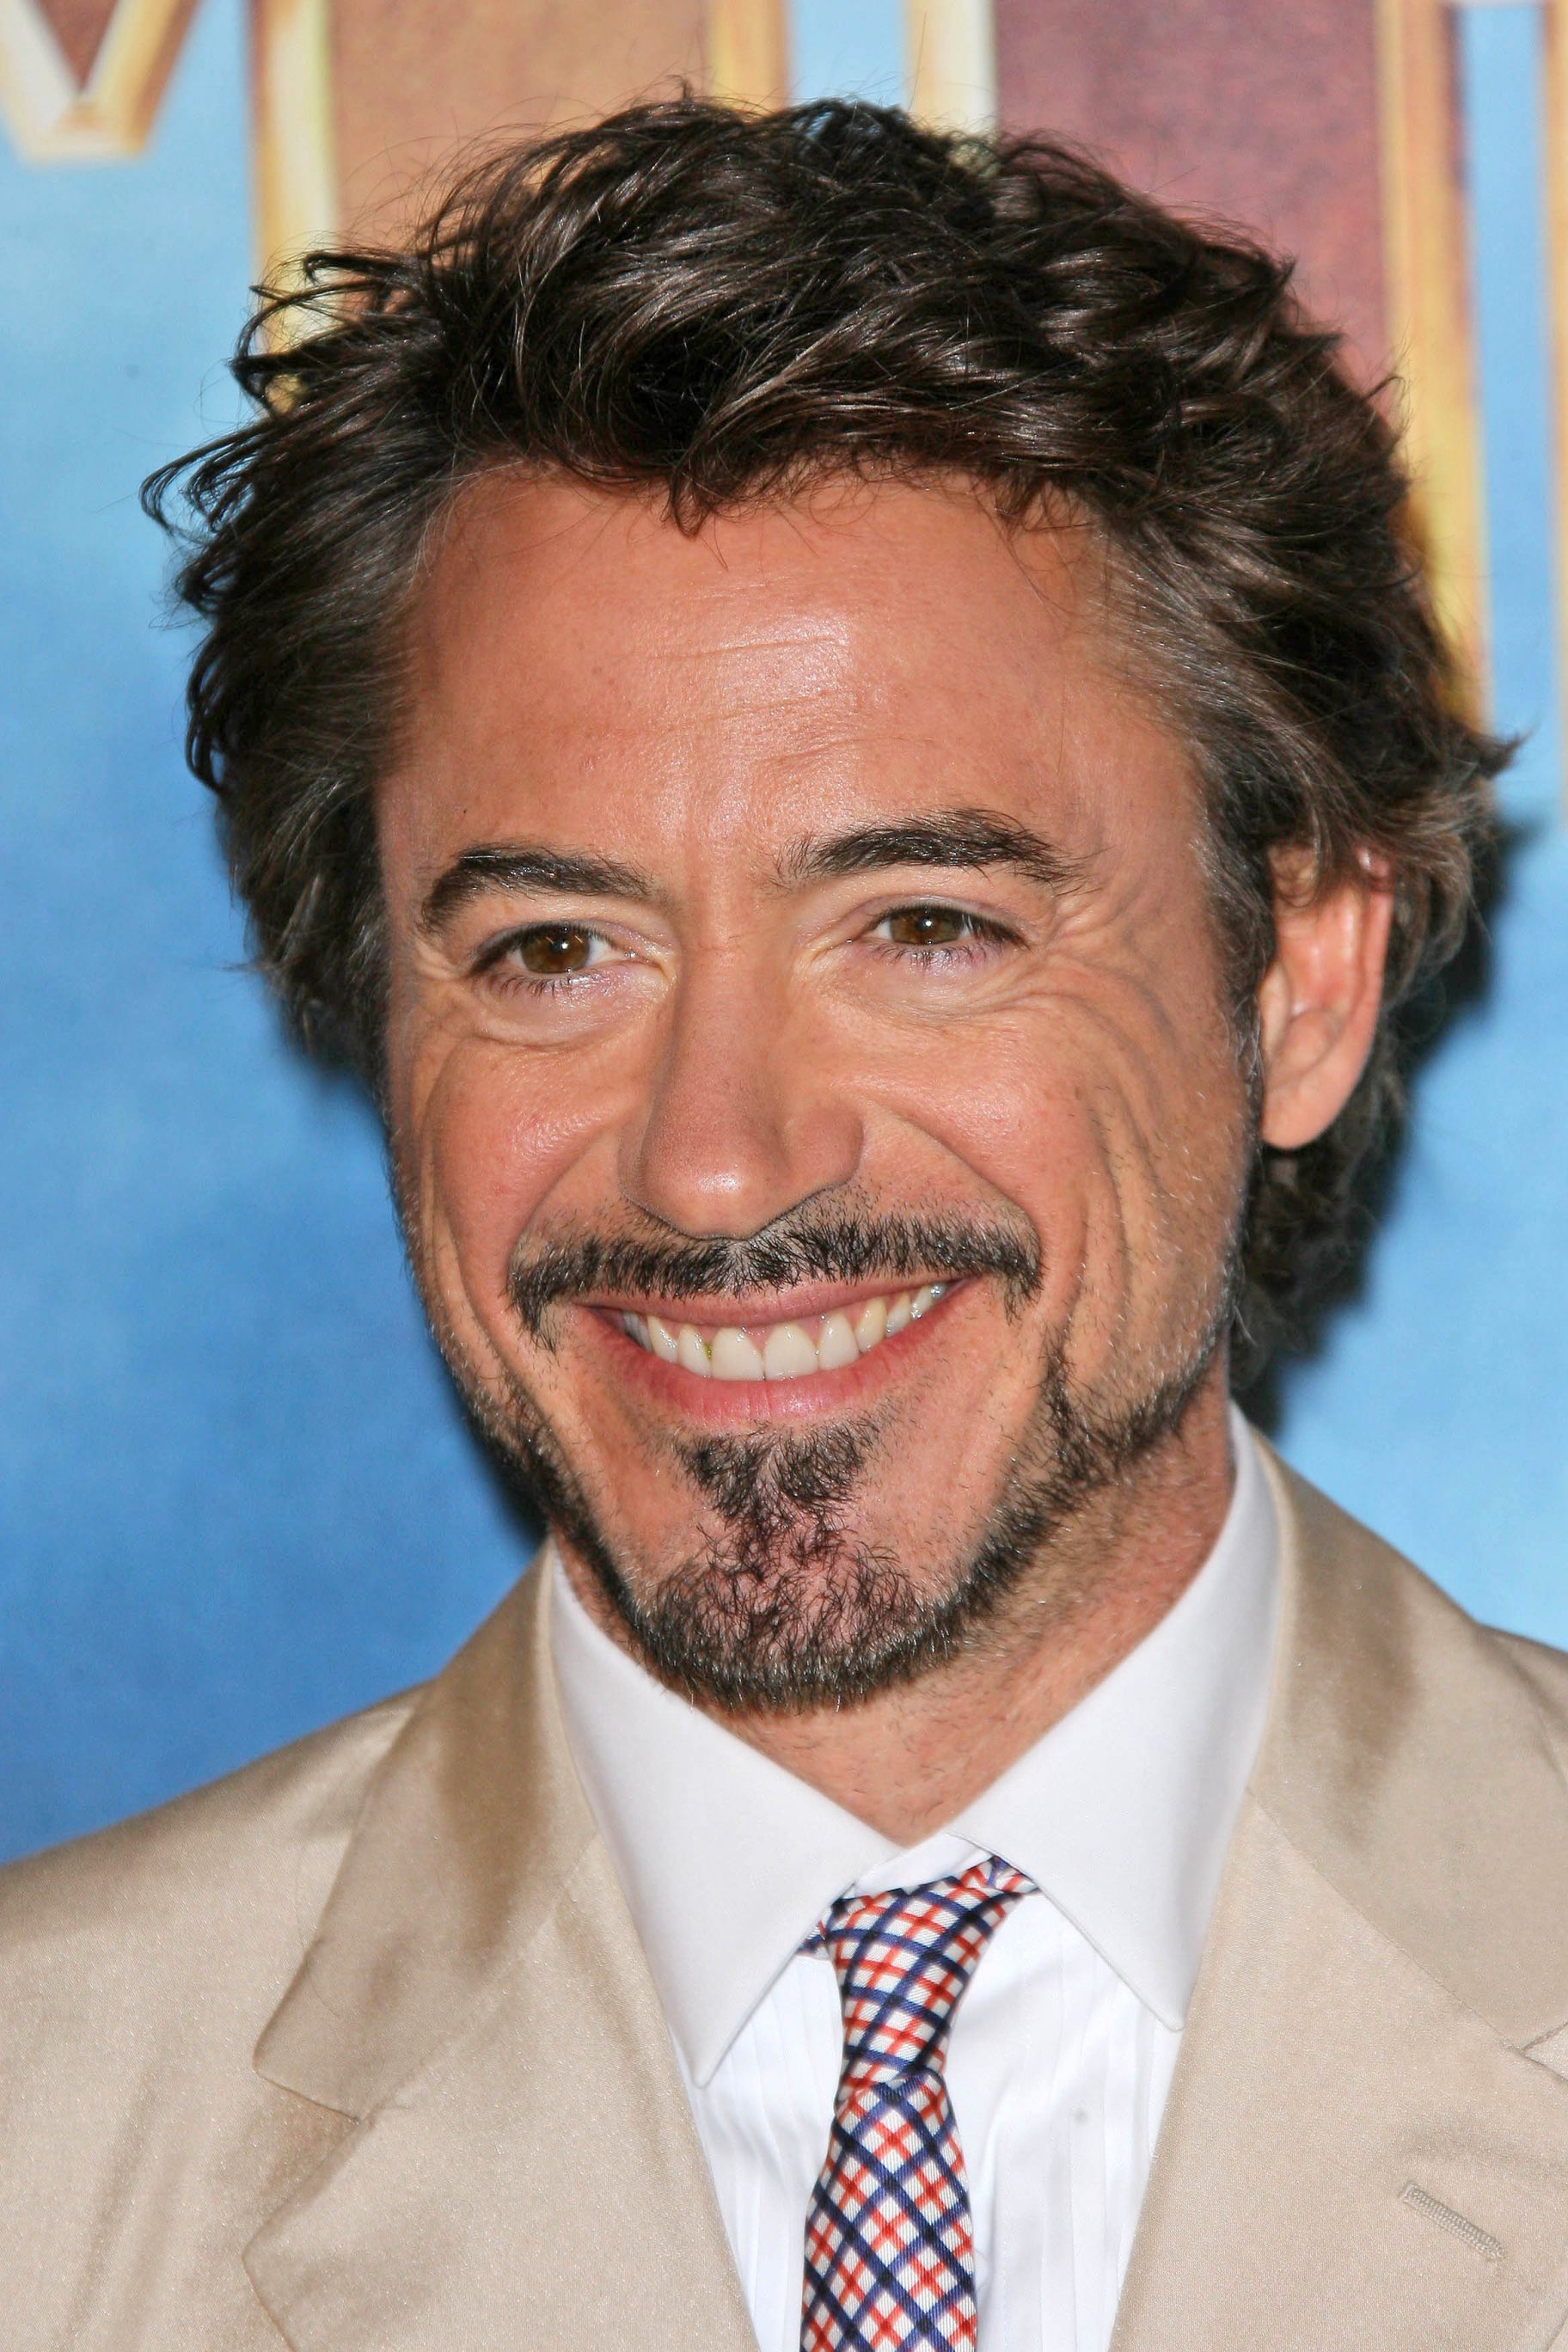 Robert Downey Jr. - Legendary Iron Man